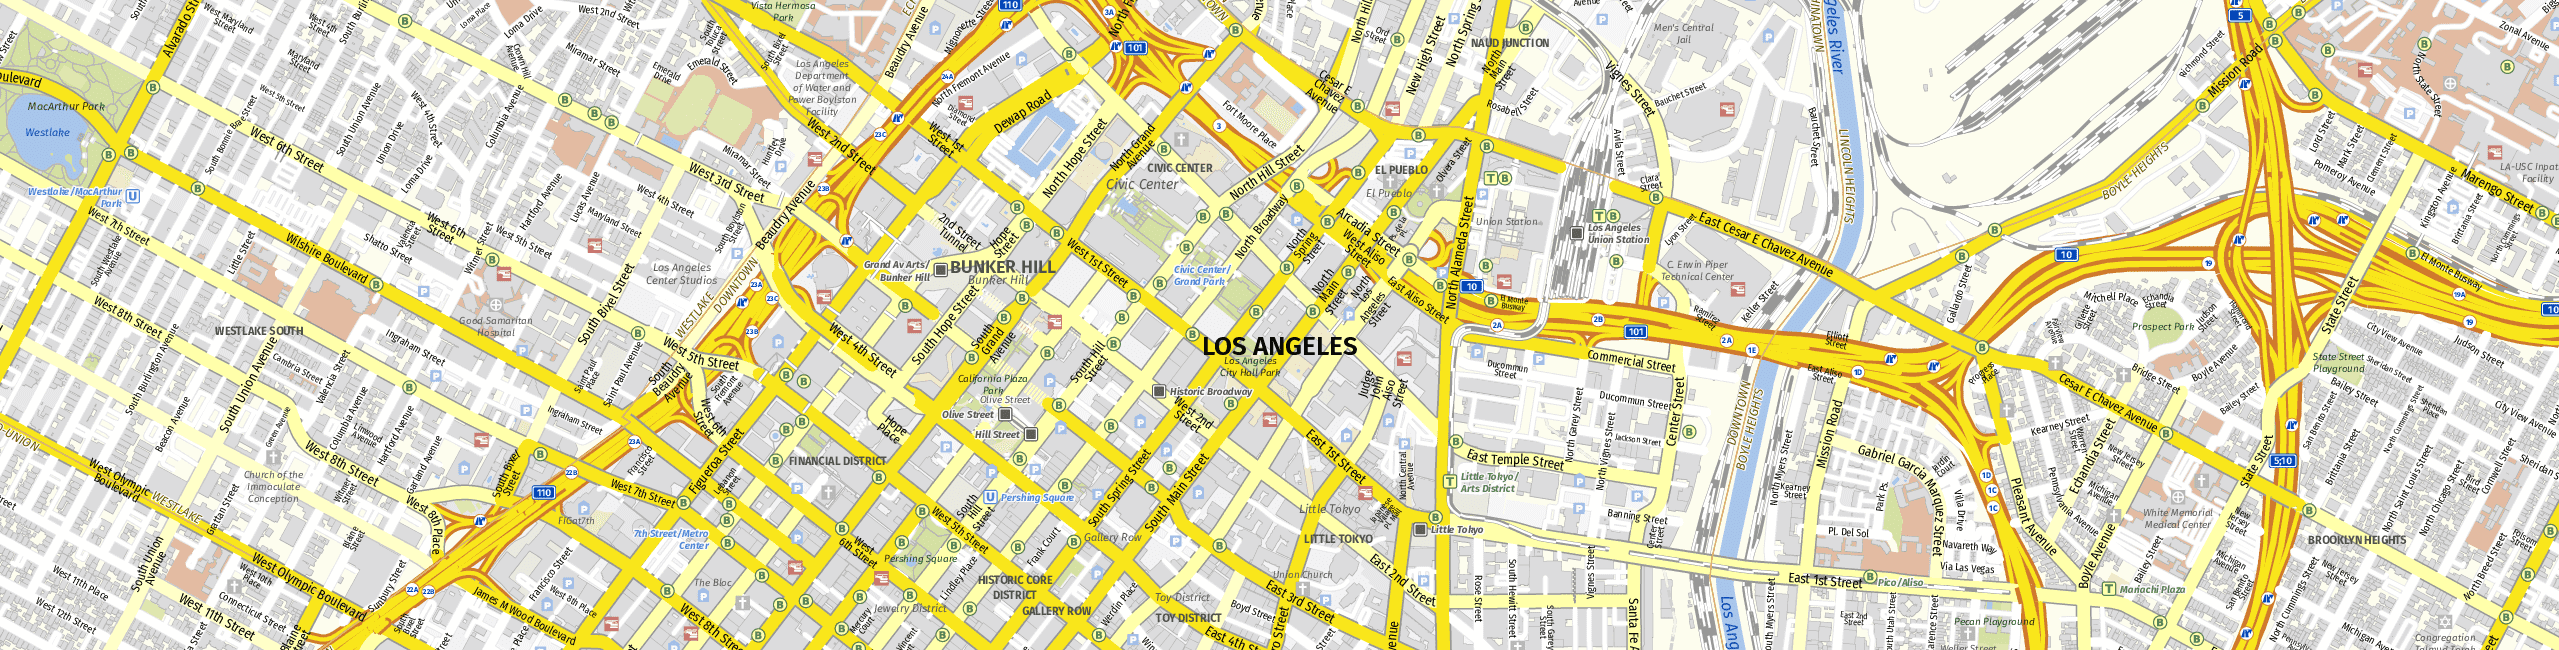 Stadtplan Los Angeles zum Downloaden.